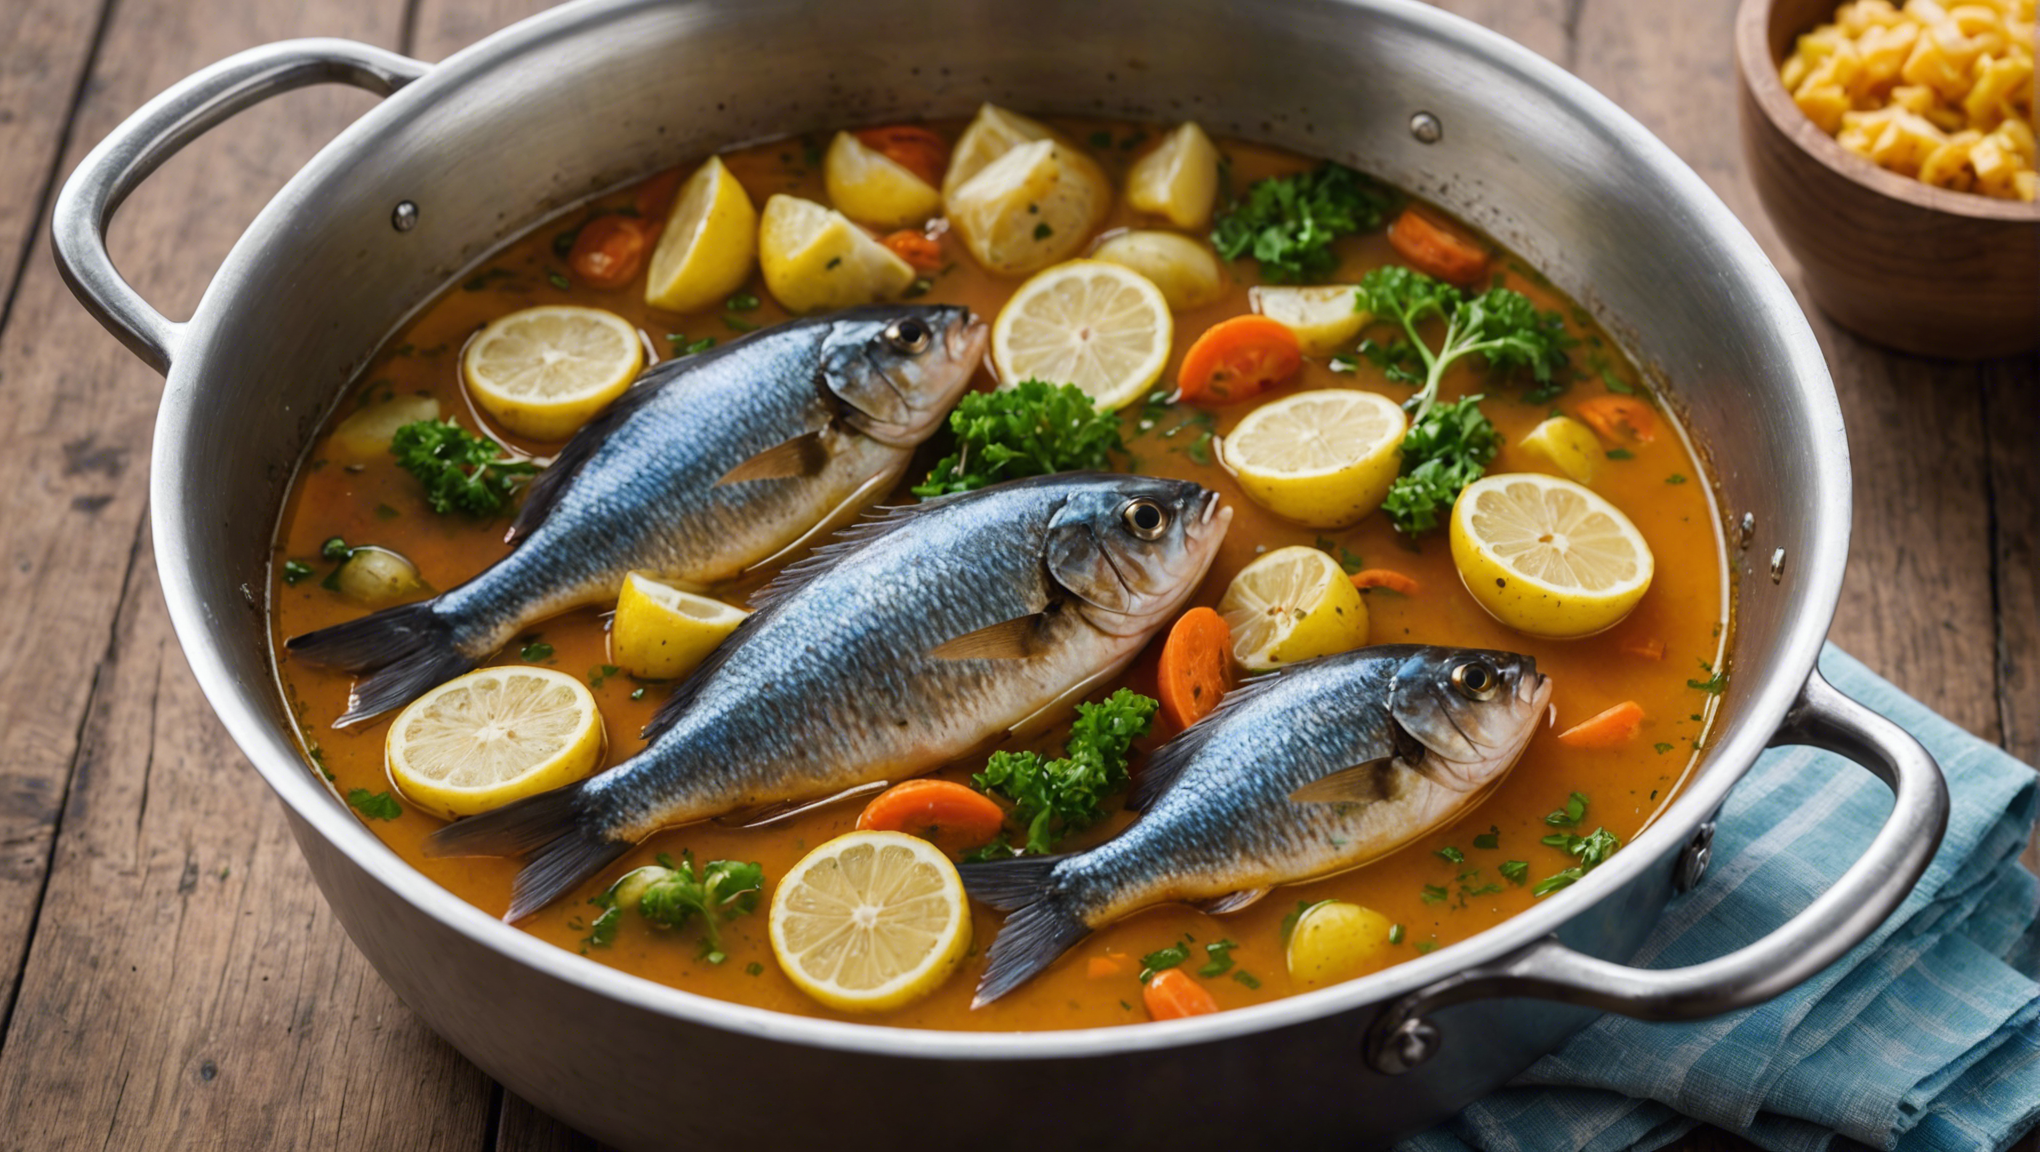 découvrez le temps de cuisson parfait pour préparer un délicieux poisson au court bouillon. suivez nos conseils pour une cuisson idéale et savoureuse.